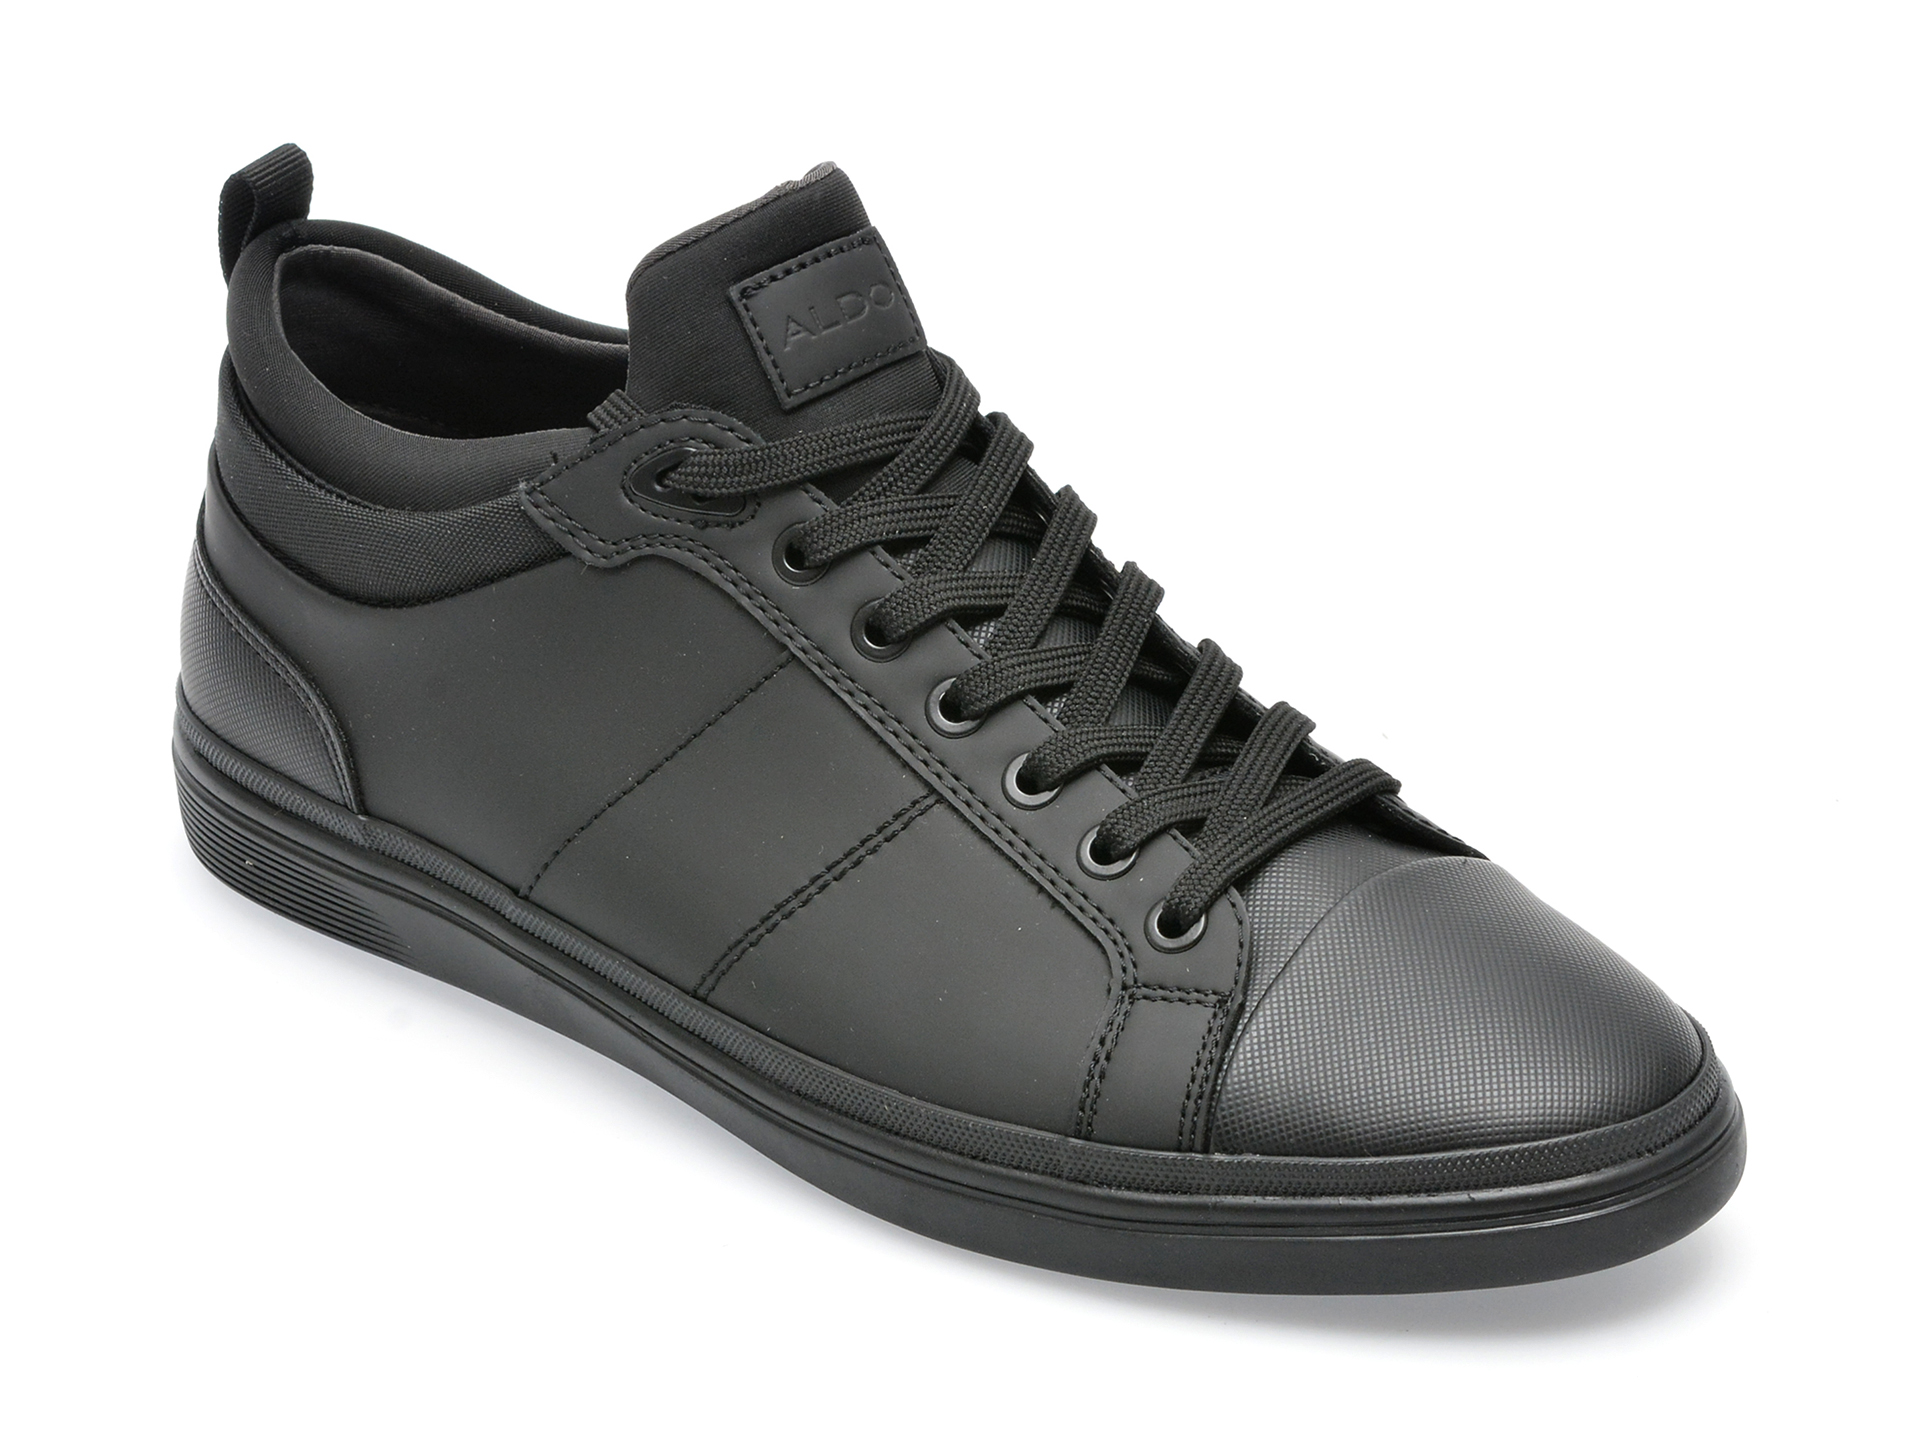 Pantofi sport ALDO negri, SALLOKER001, din piele ecologica